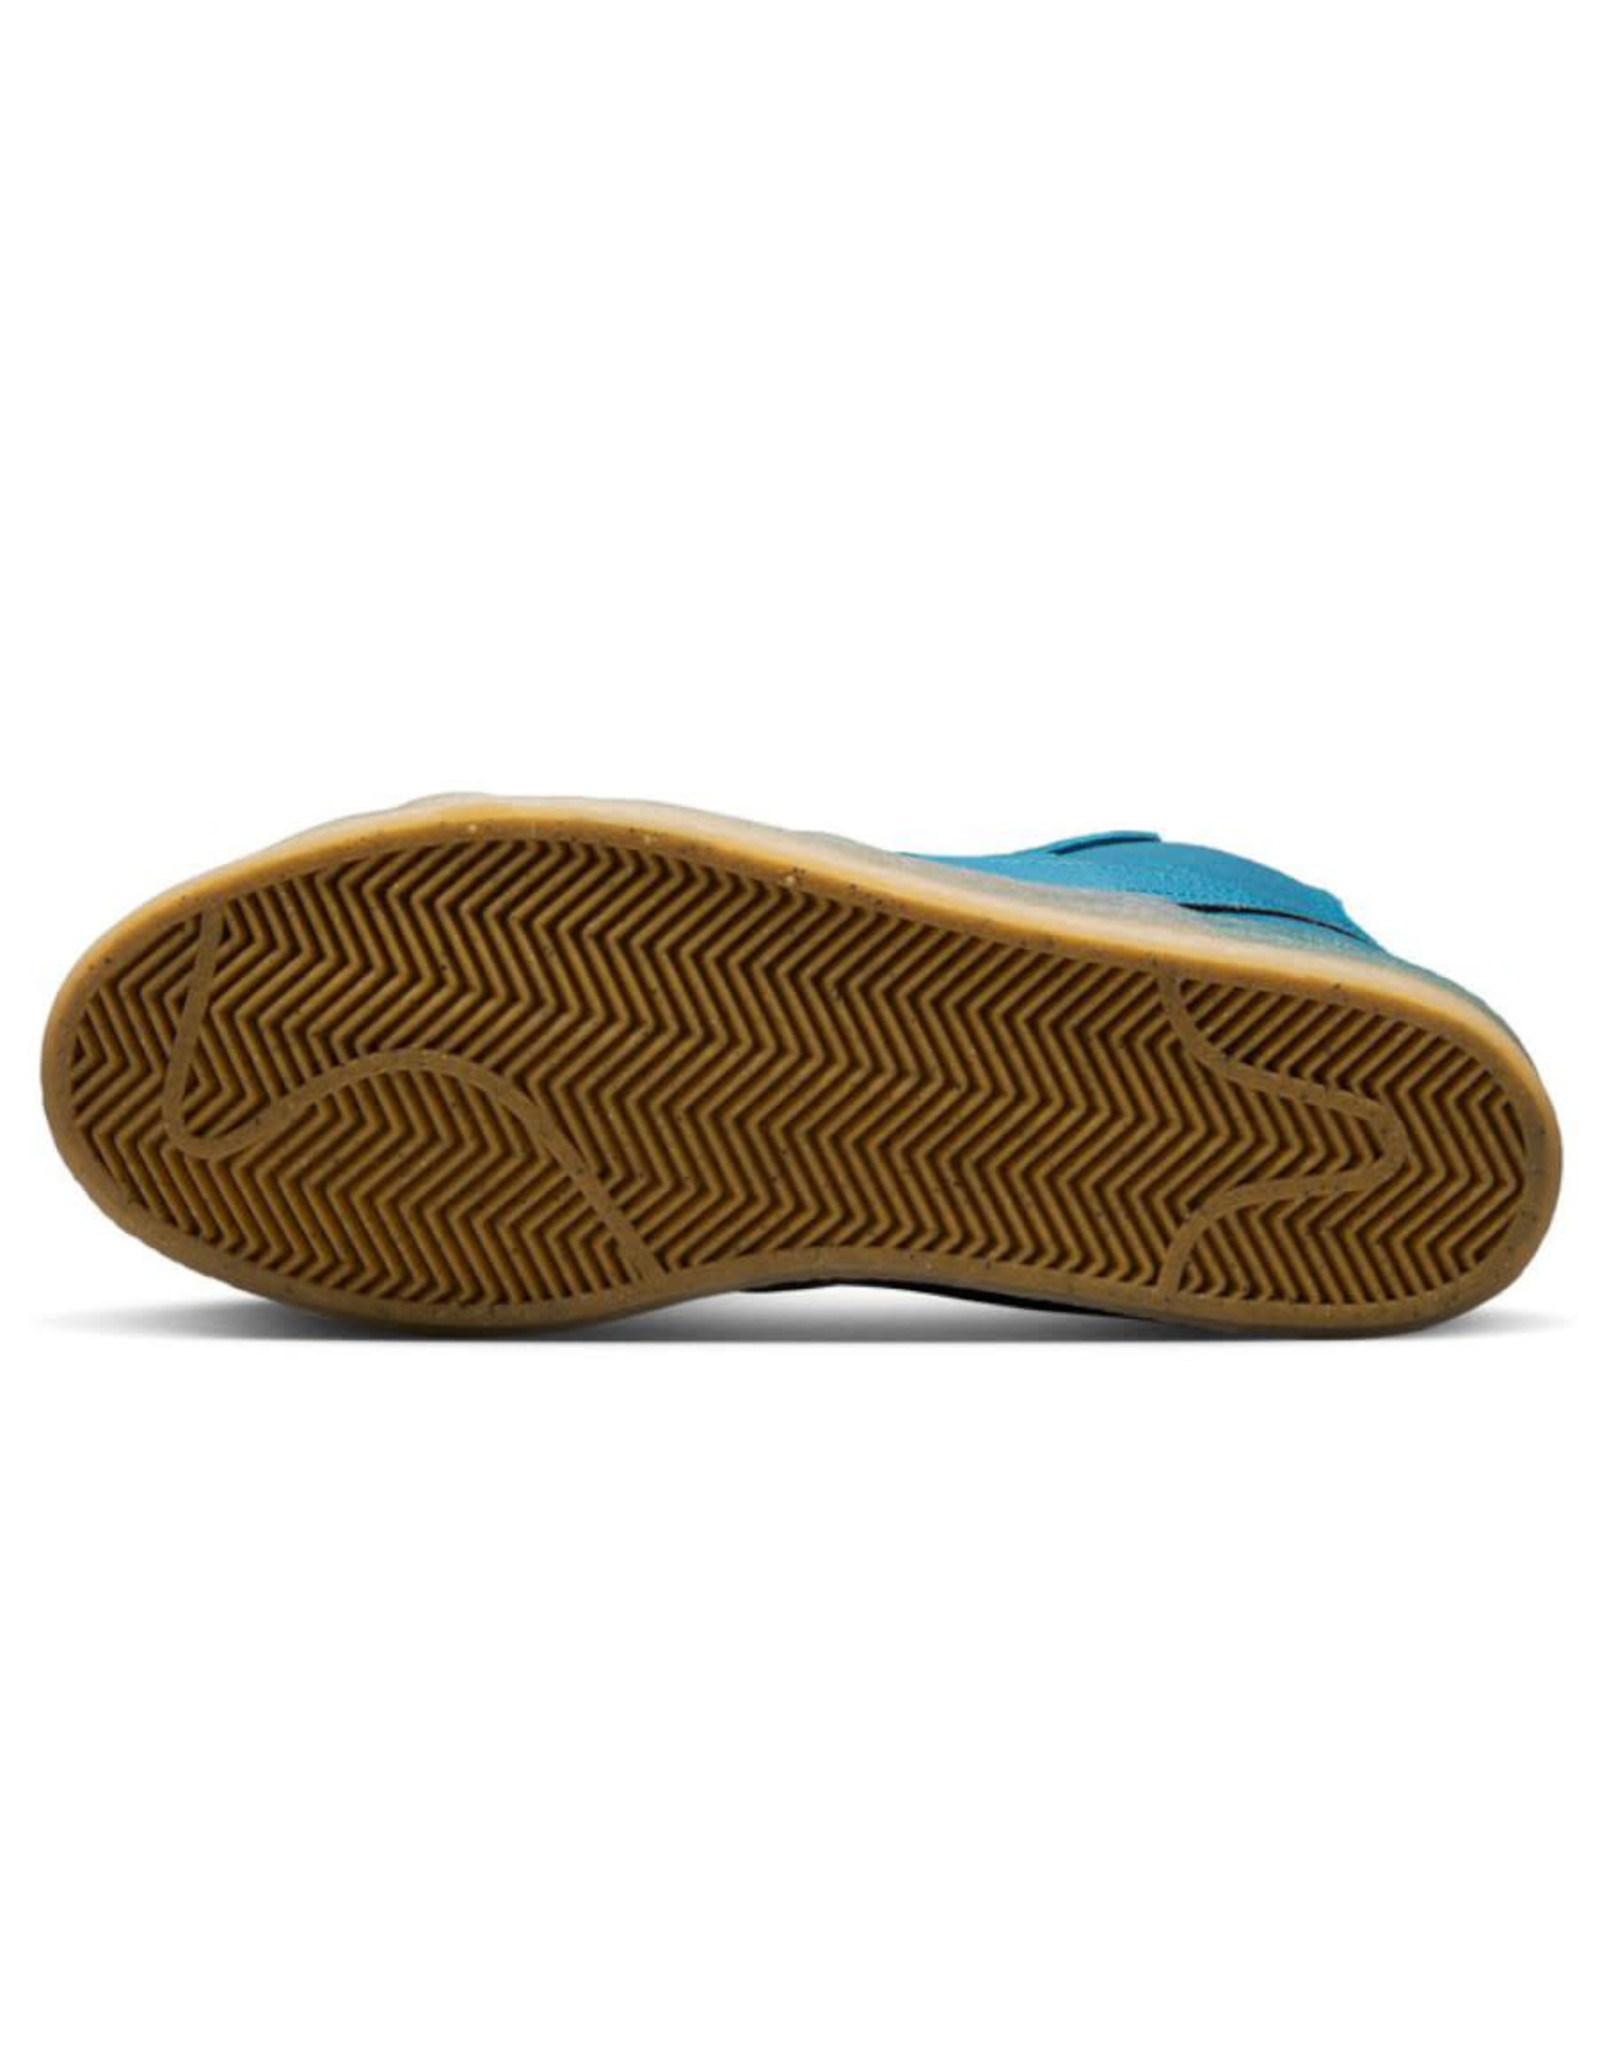 Nike SB Nike SB Shoe Zoom Blazer Mid Premium Plus (Teal Gum)